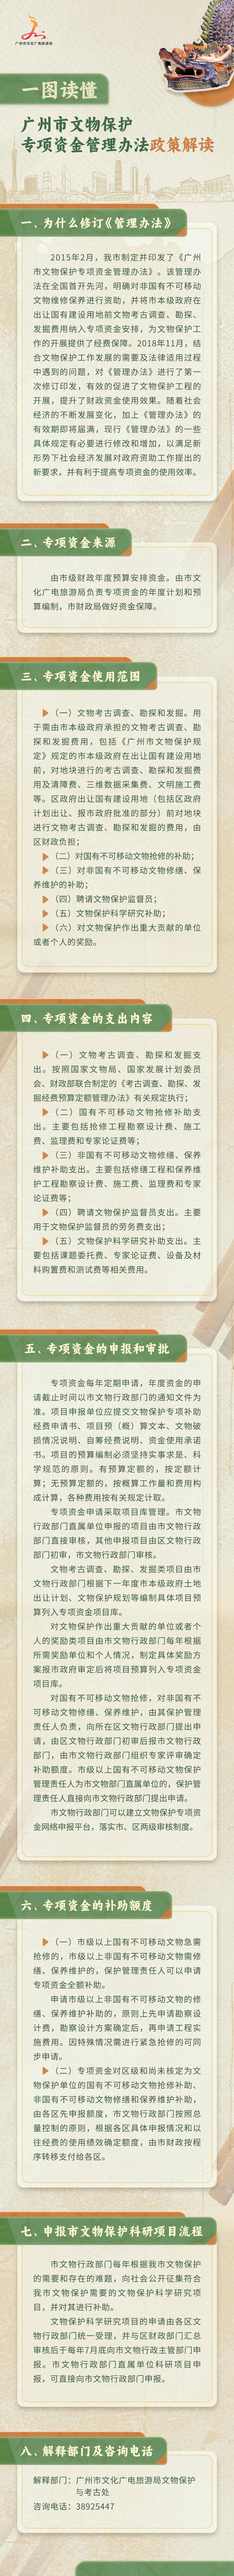 《广州市文物保护专项资金管理办法》.jpg